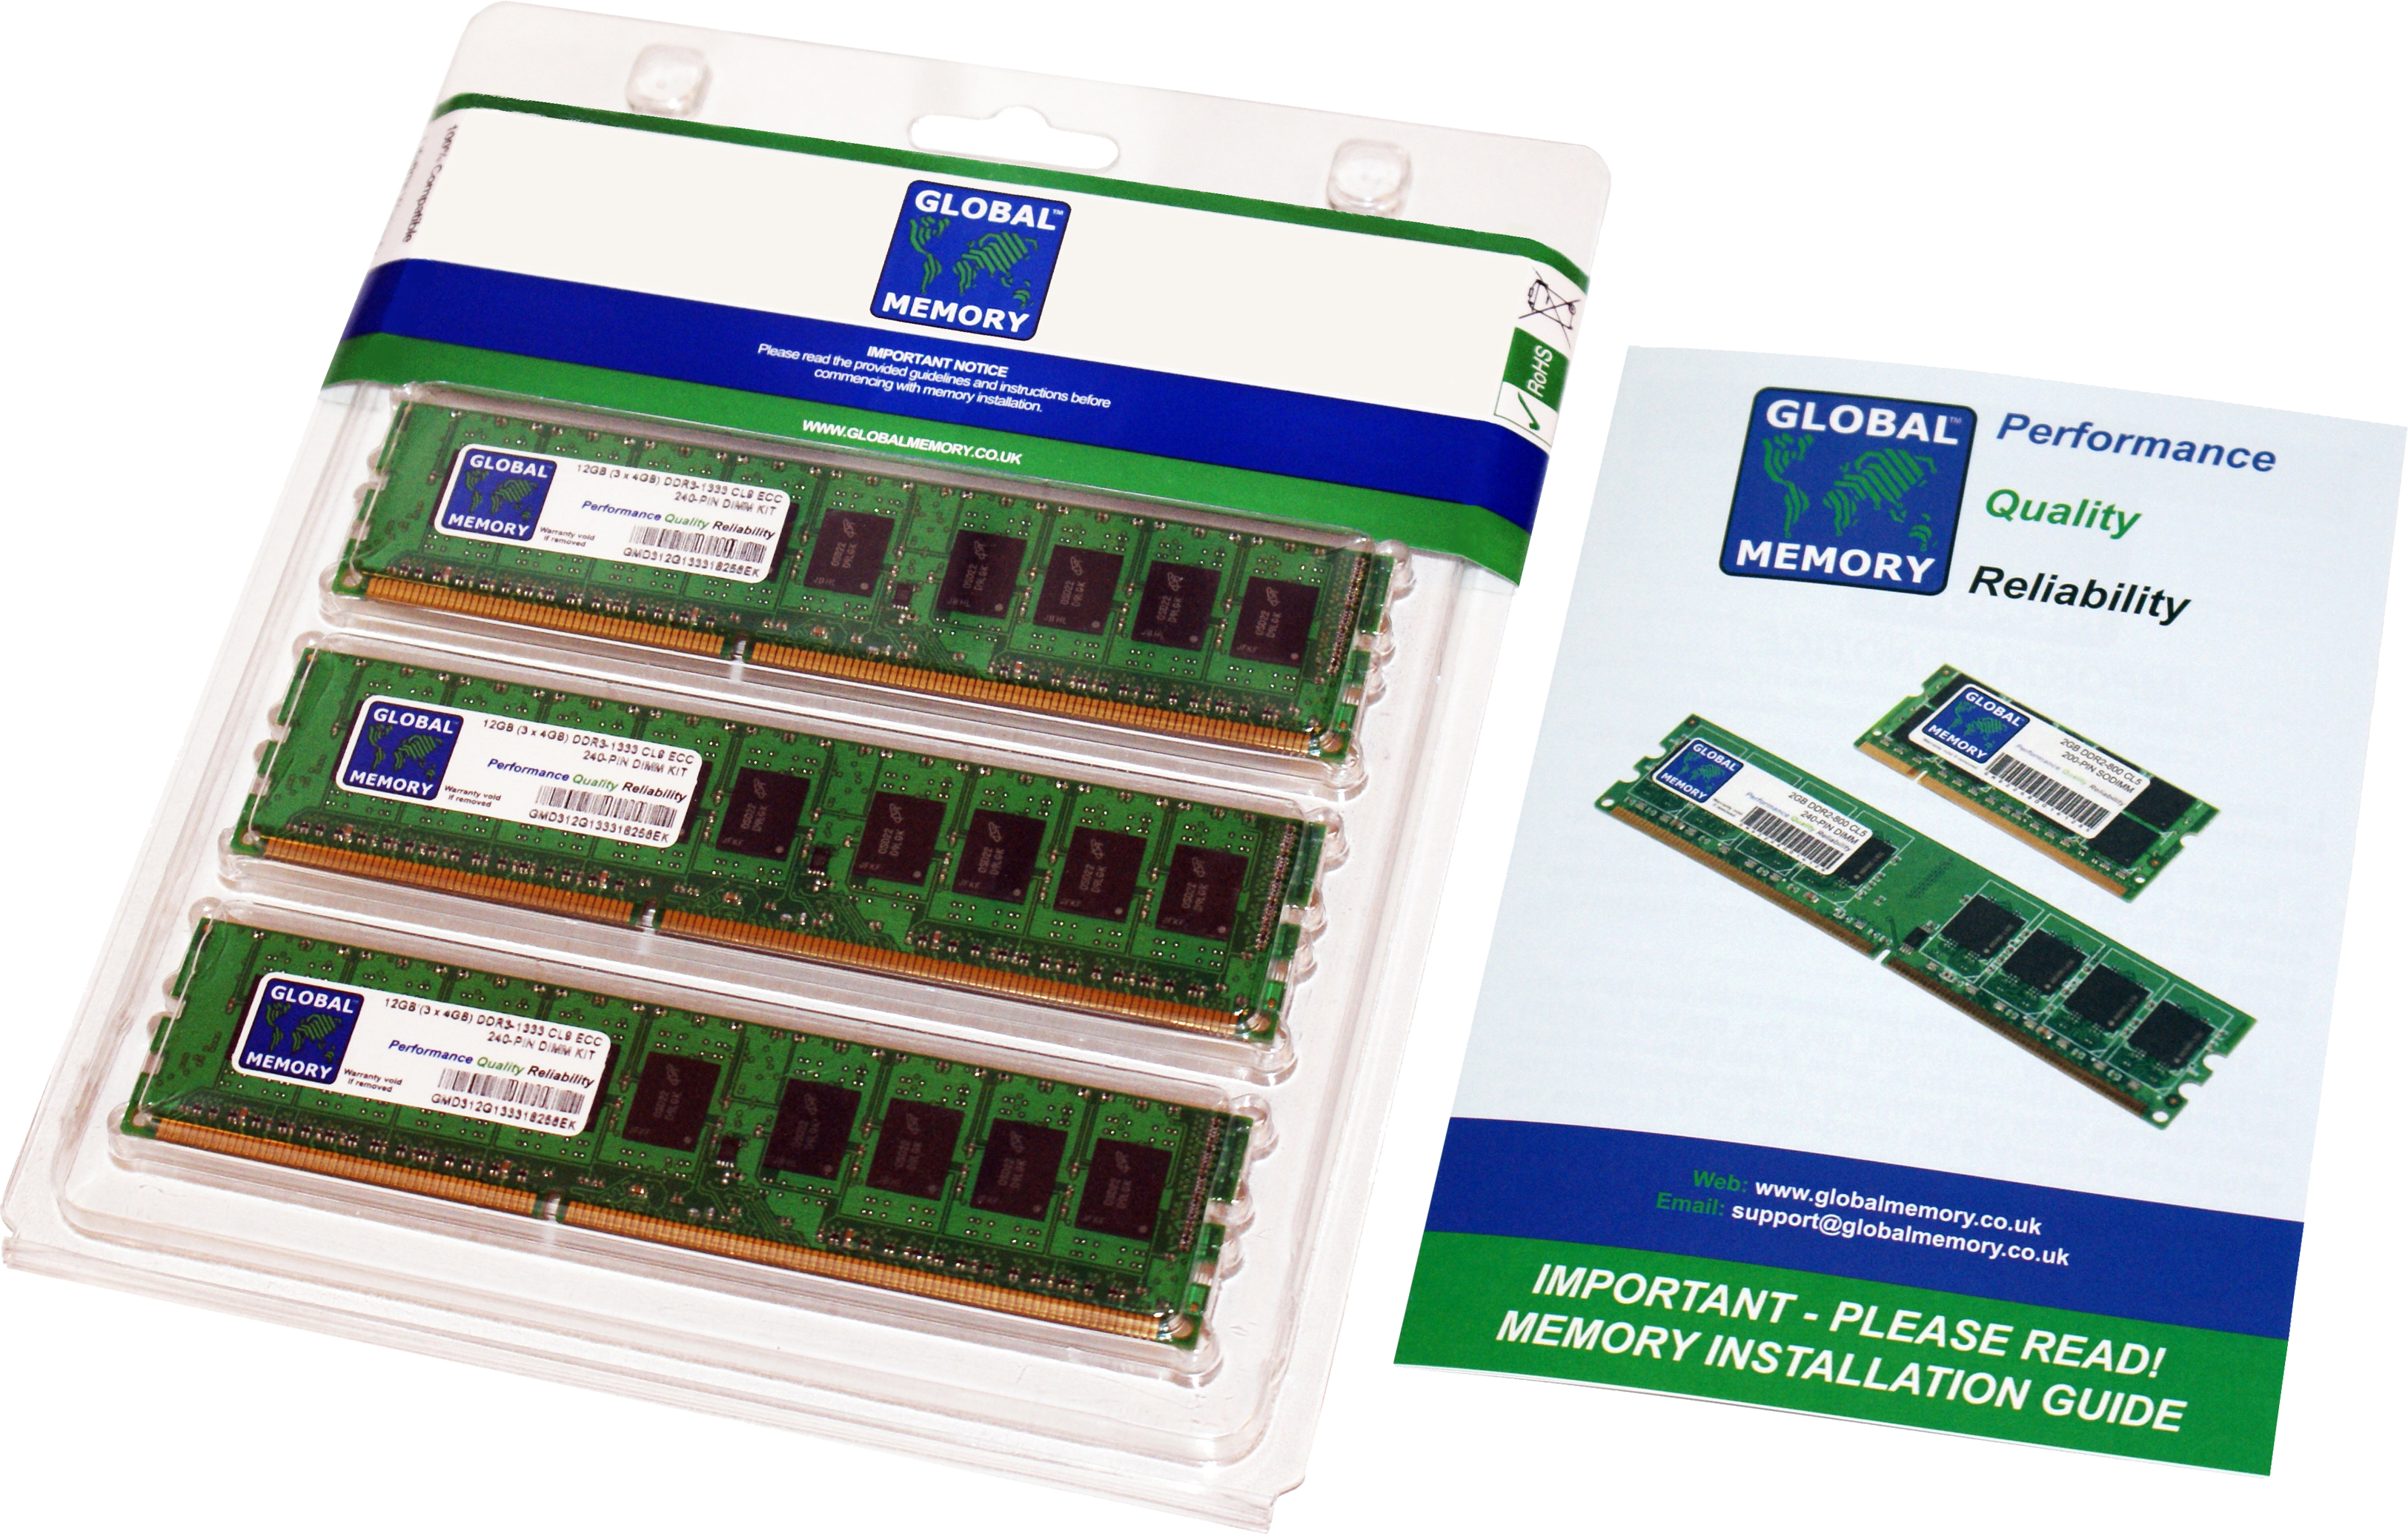 12GB (3 x 4GB) DDR3 1866MHz PC3-14900 240-PIN ECC DIMM (UDIMM) MEMORY RAM KIT FOR HEWLETT-PACKARD SERVERS/WORKSTATIONS